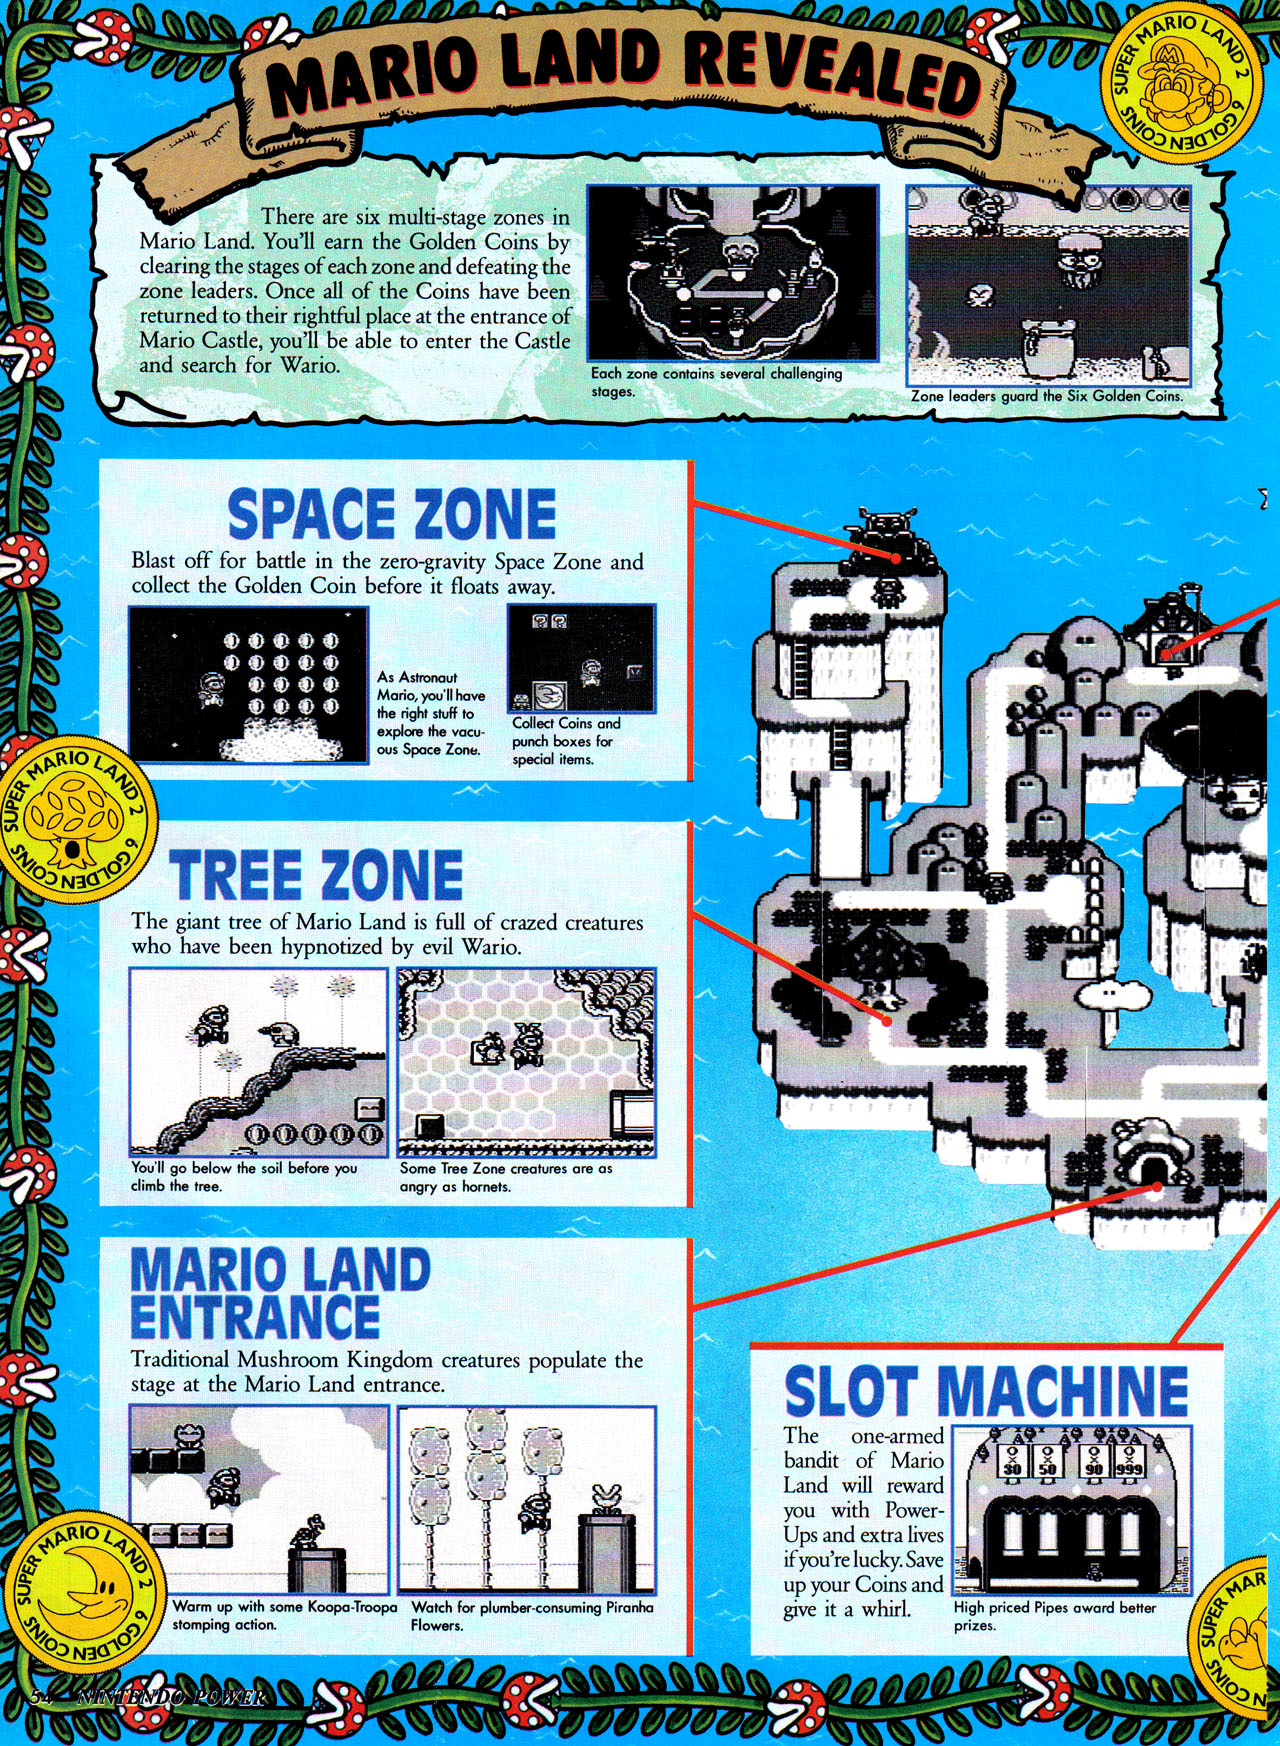 Super mario land 2 coins 6. Super Mario Land 2 6 Golden Coins. Super Mario Land. Super Mario Land 2 6 Golden Coins 1992. Super Mario Land 2 6 Golden Coins Скриншоты.